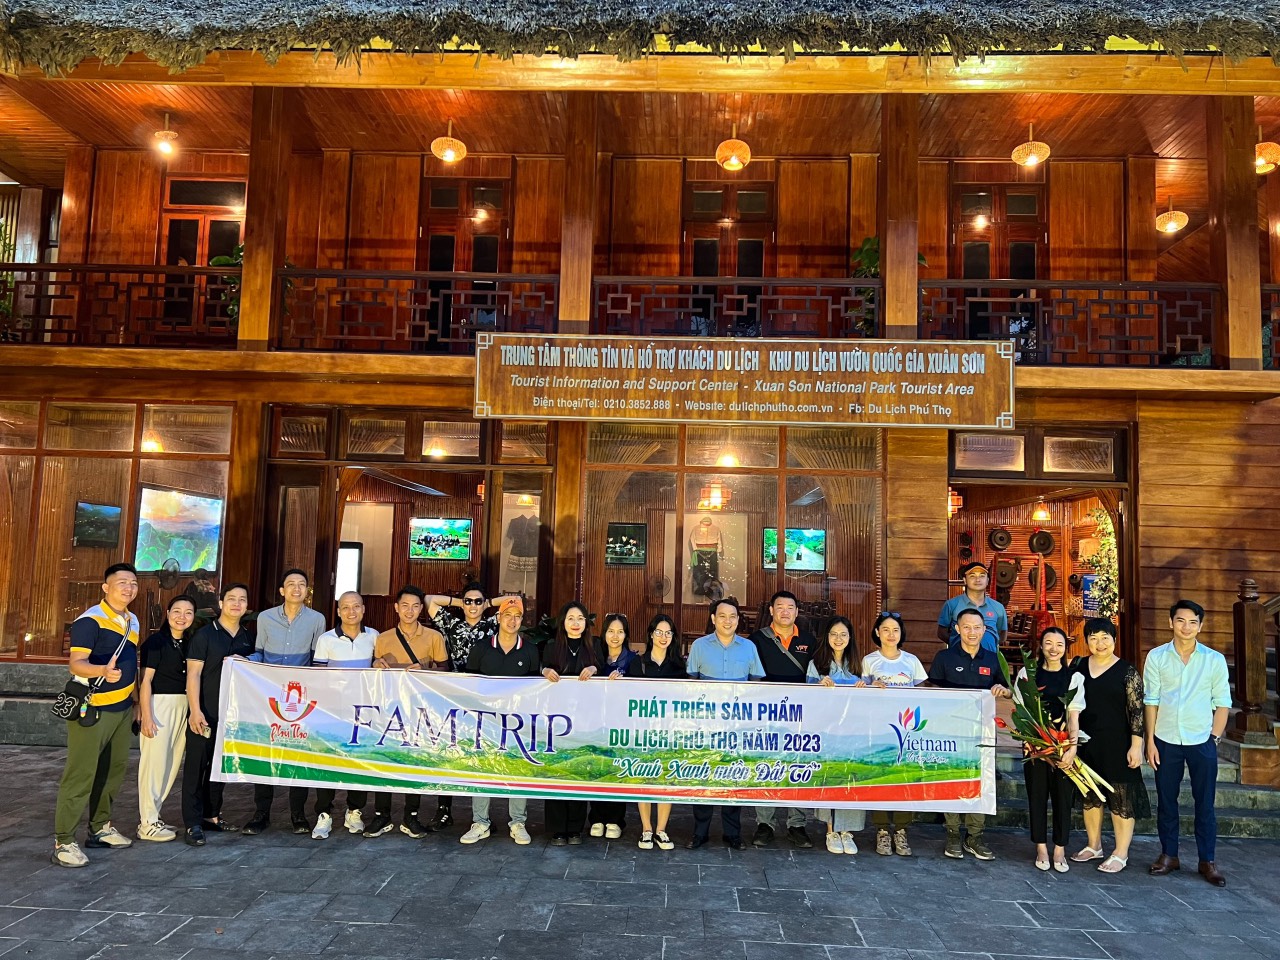 Chương trình Famtrip "Xanh xanh miền đất Tổ" khảo sát một số điểm du lịch tại Phú Thọ